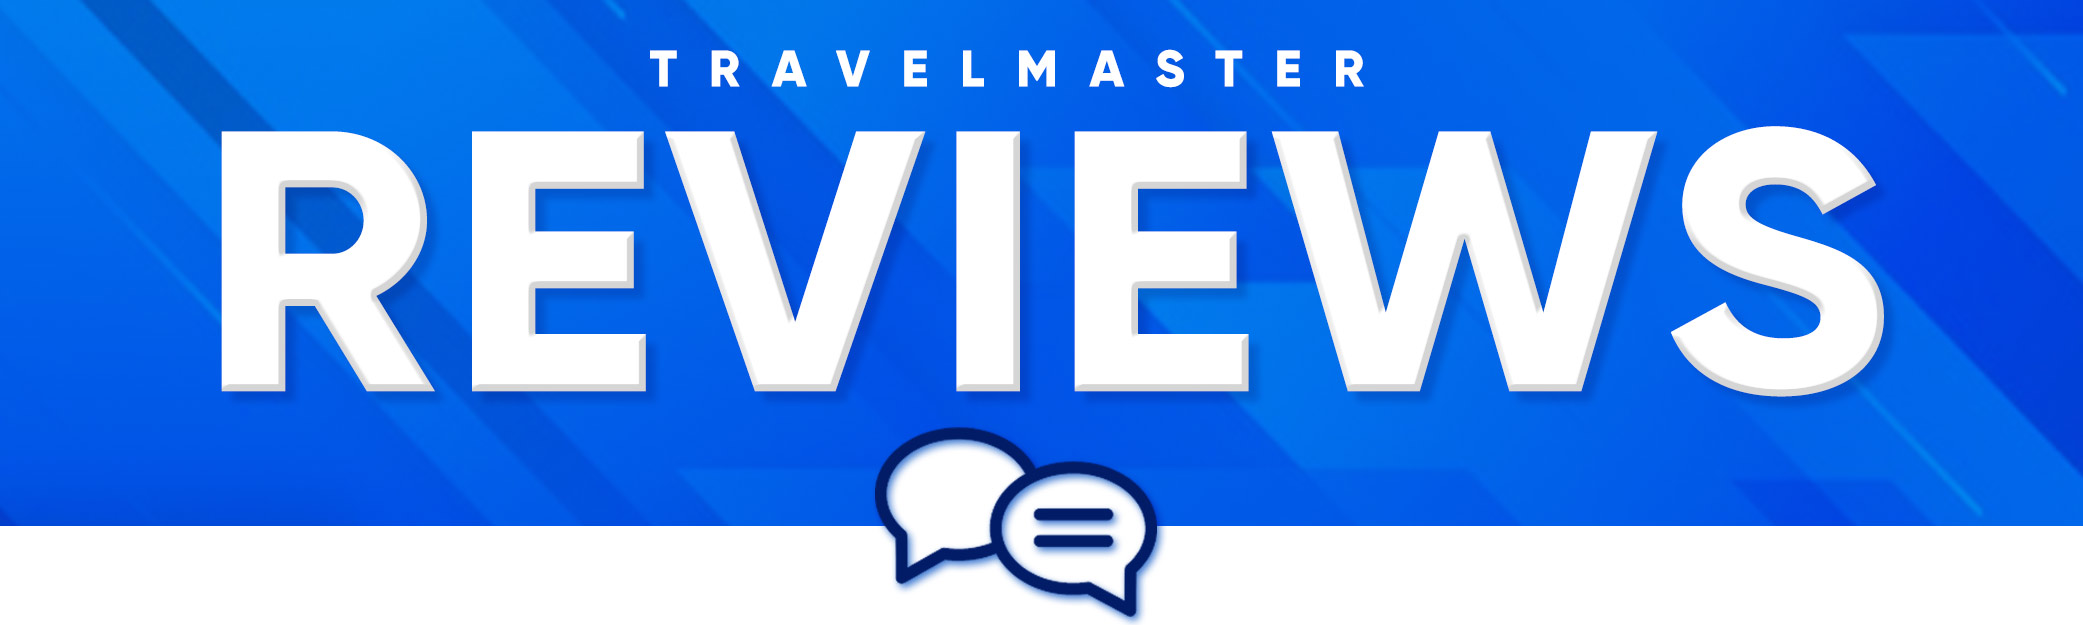 TravelMaster Reviews